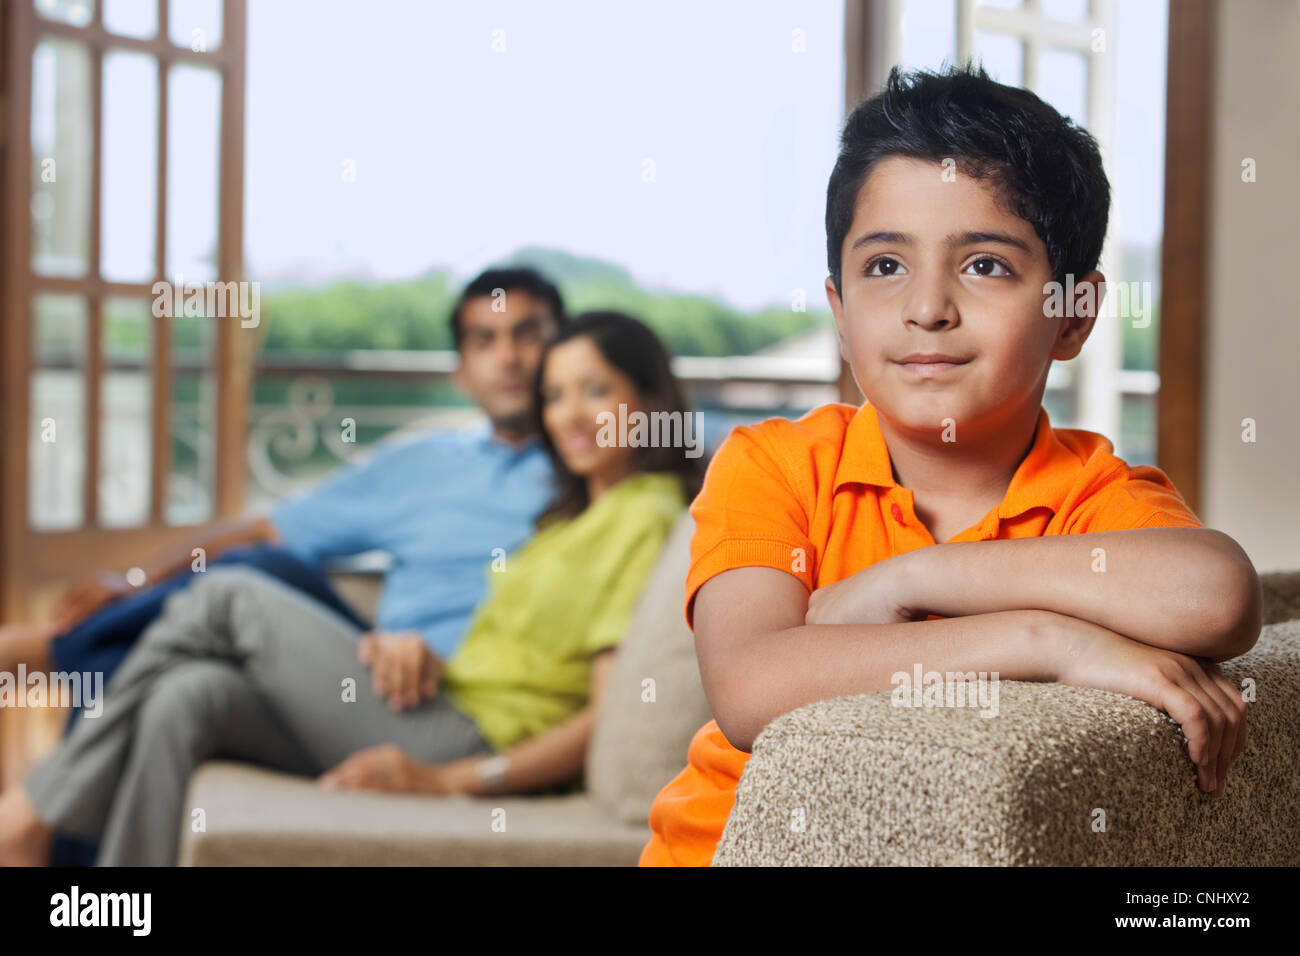 Junge auf einem sofa Stockfoto